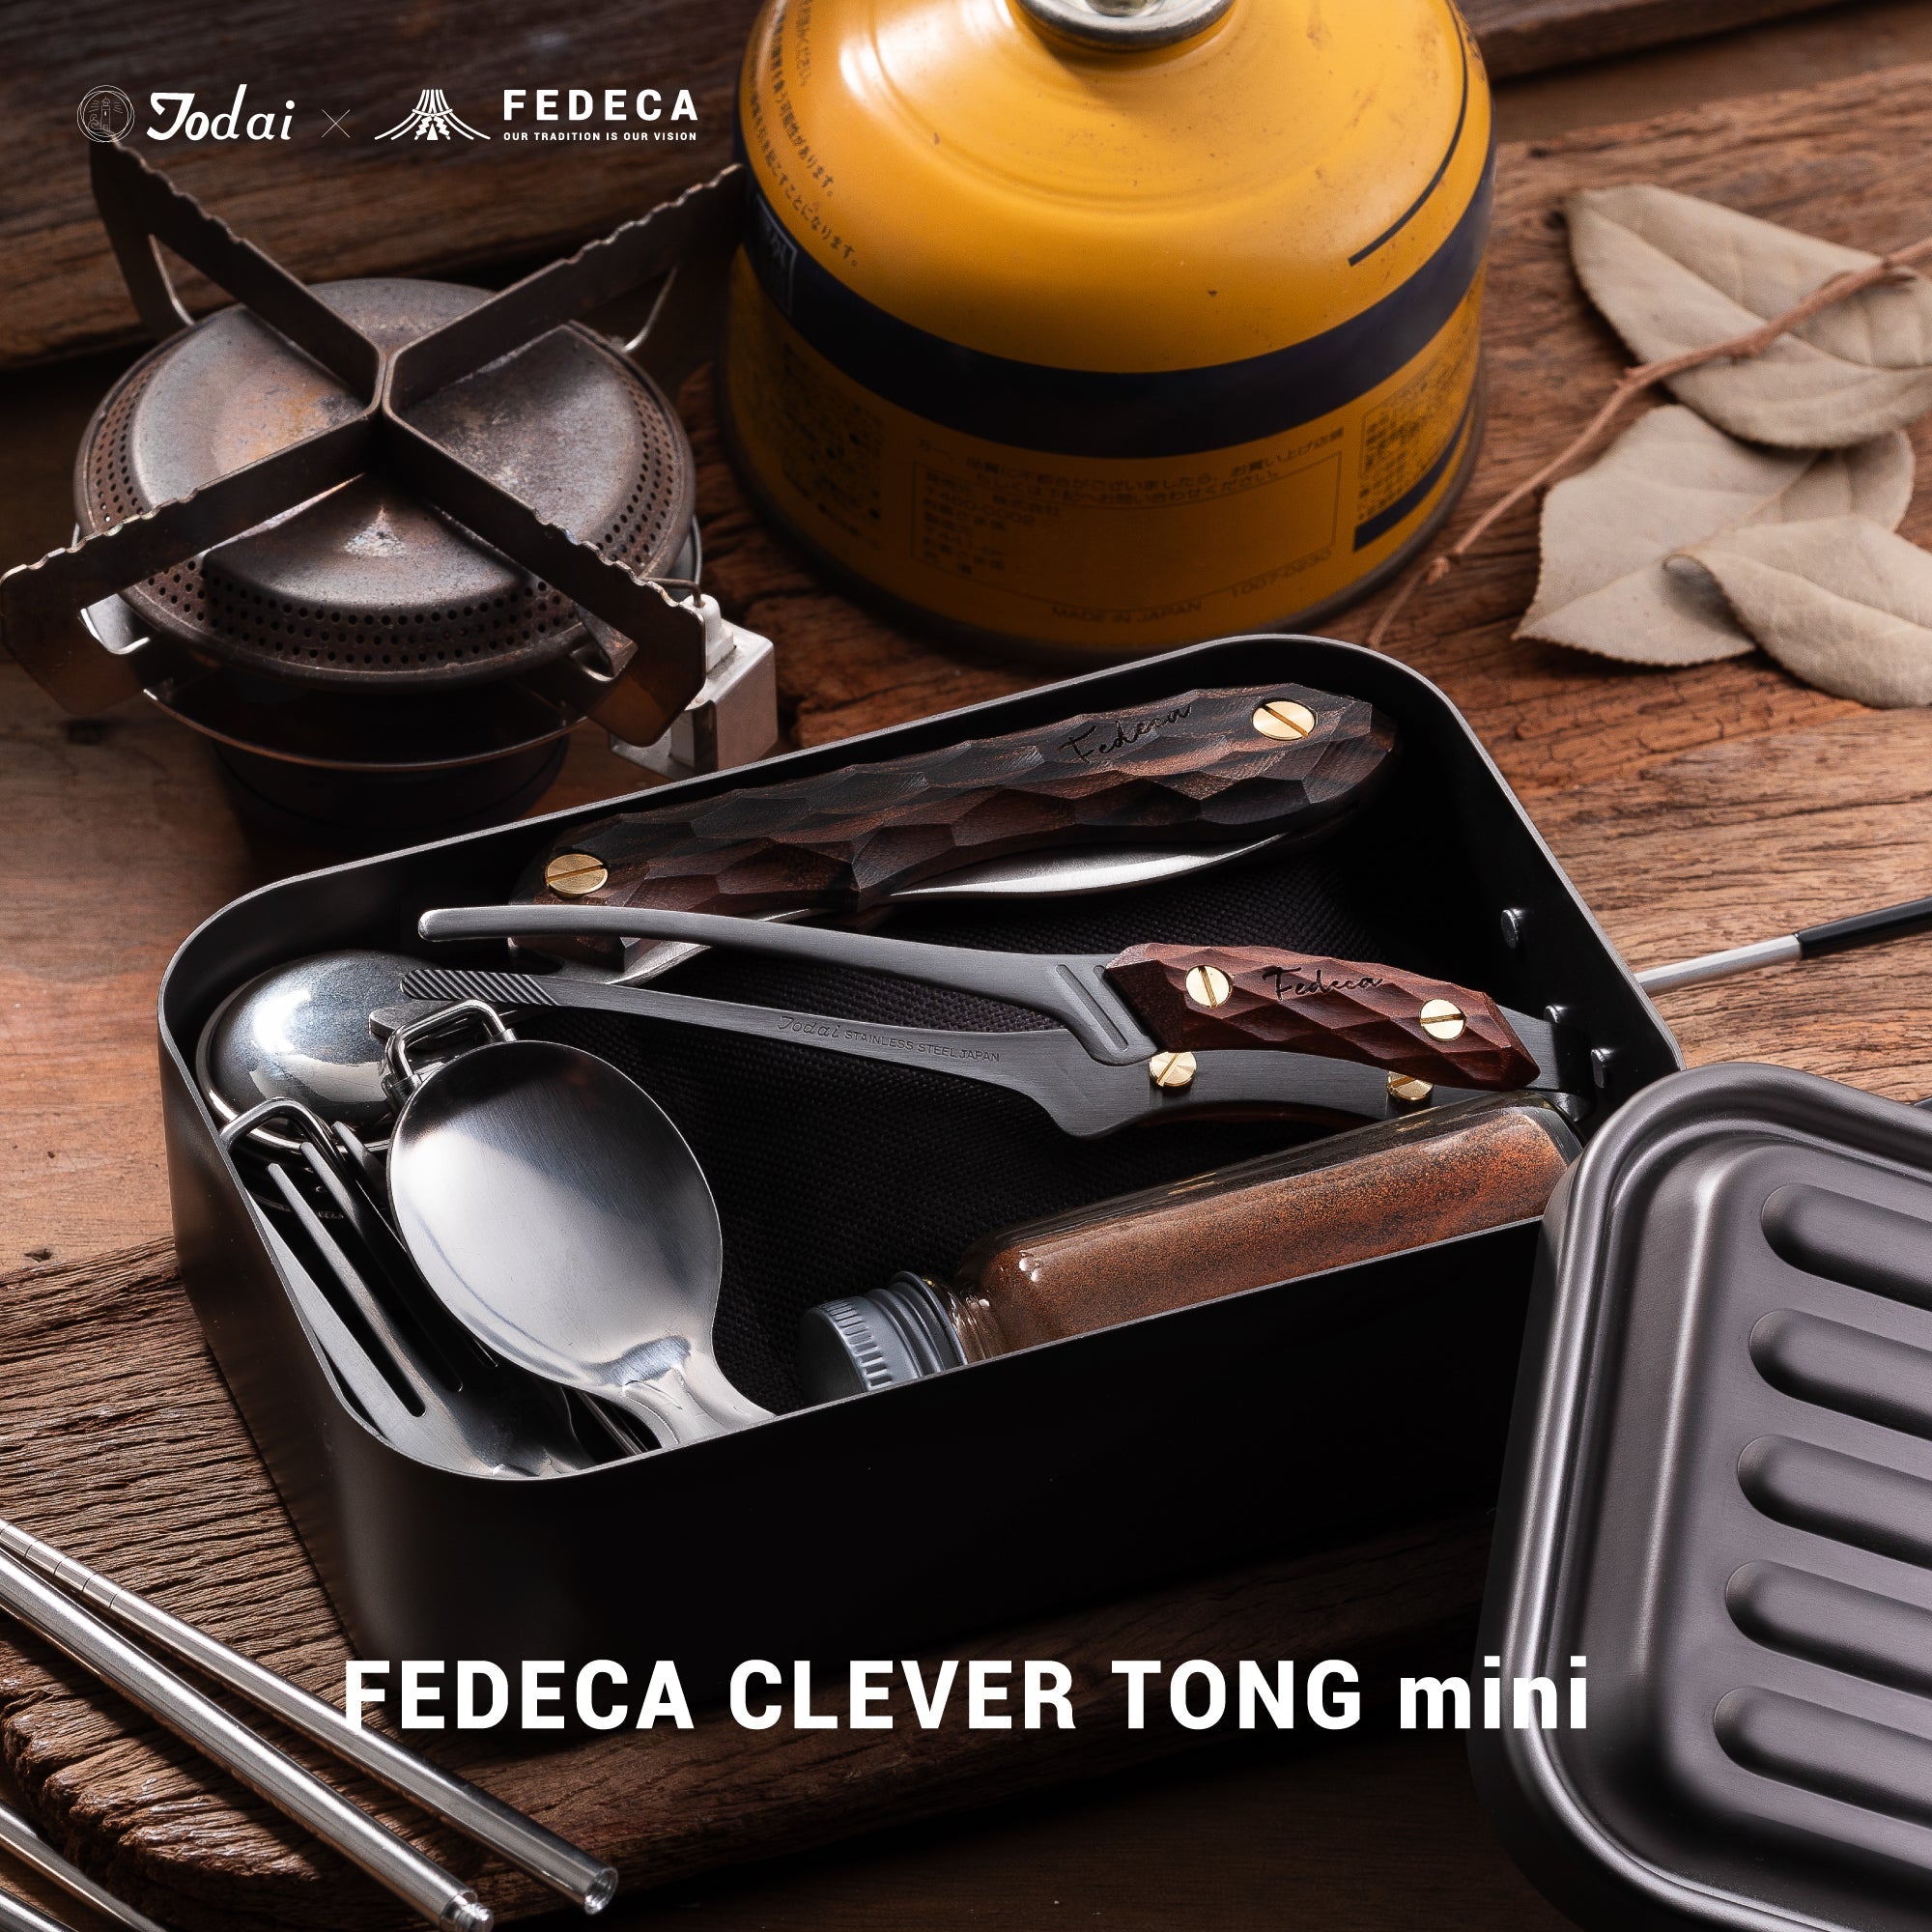 【予約】FEDECA CLEVER TONG mini マルチカラー 4,620円 【5月下旬以降順次発送 】